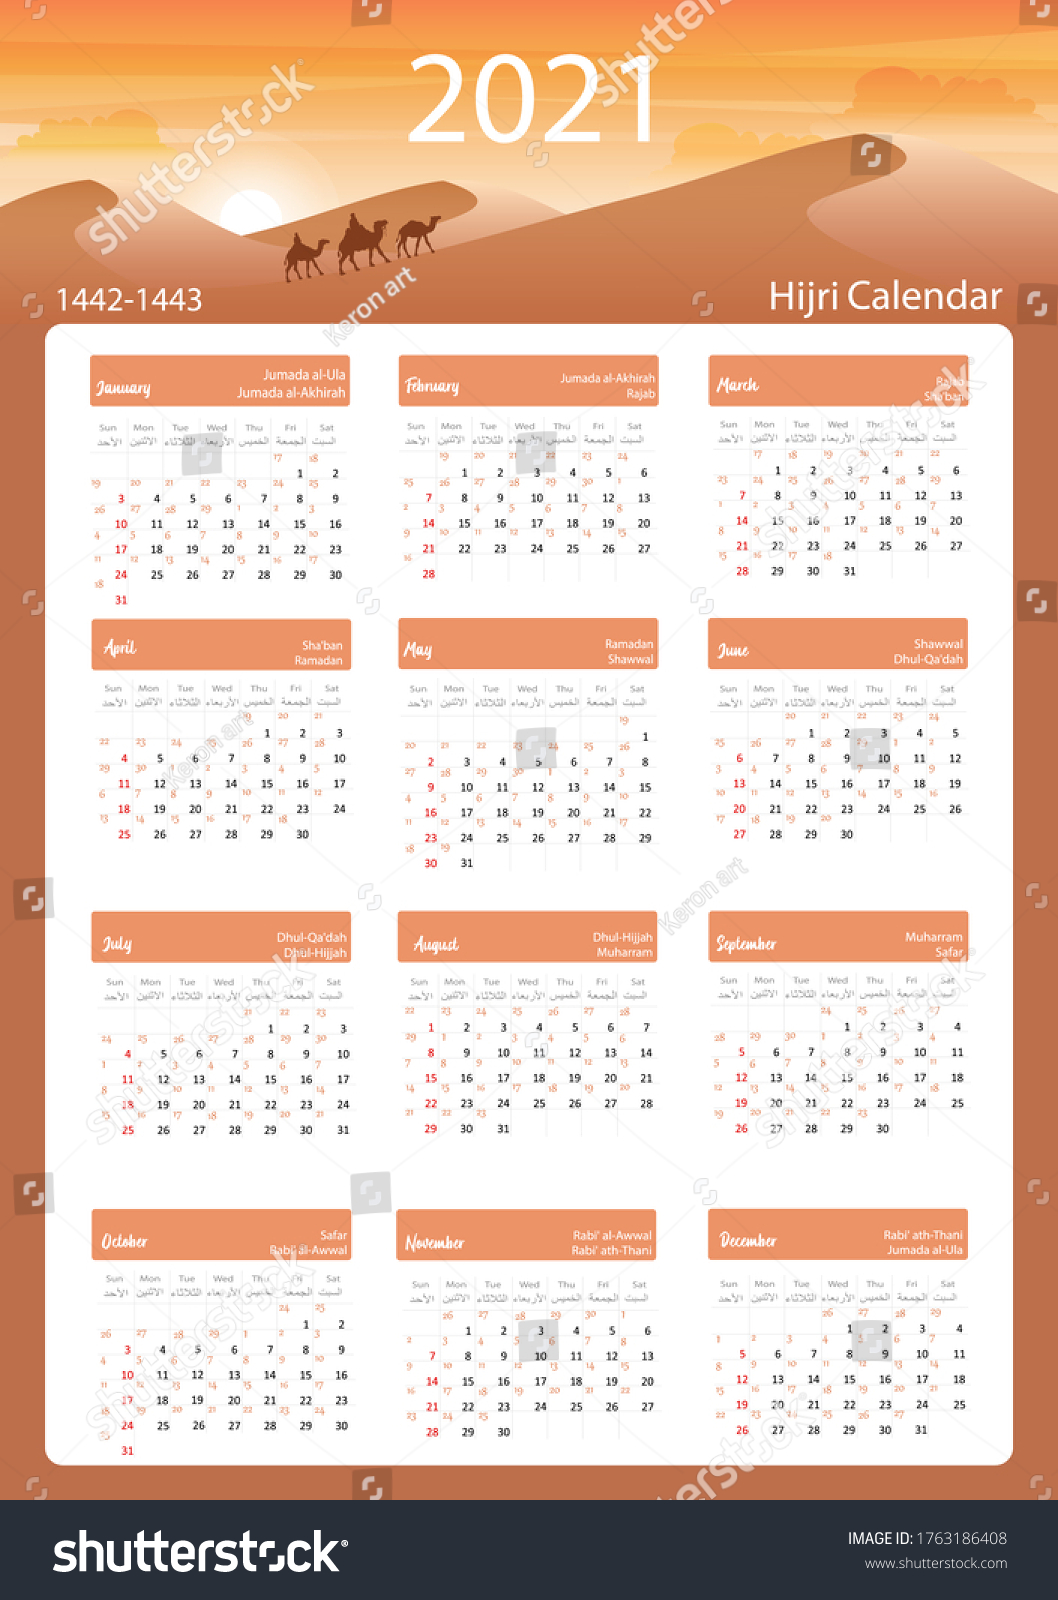 hijri-islamic-calendar-2021-1442-1443-stock-vektor-royaltyfri-1763186408